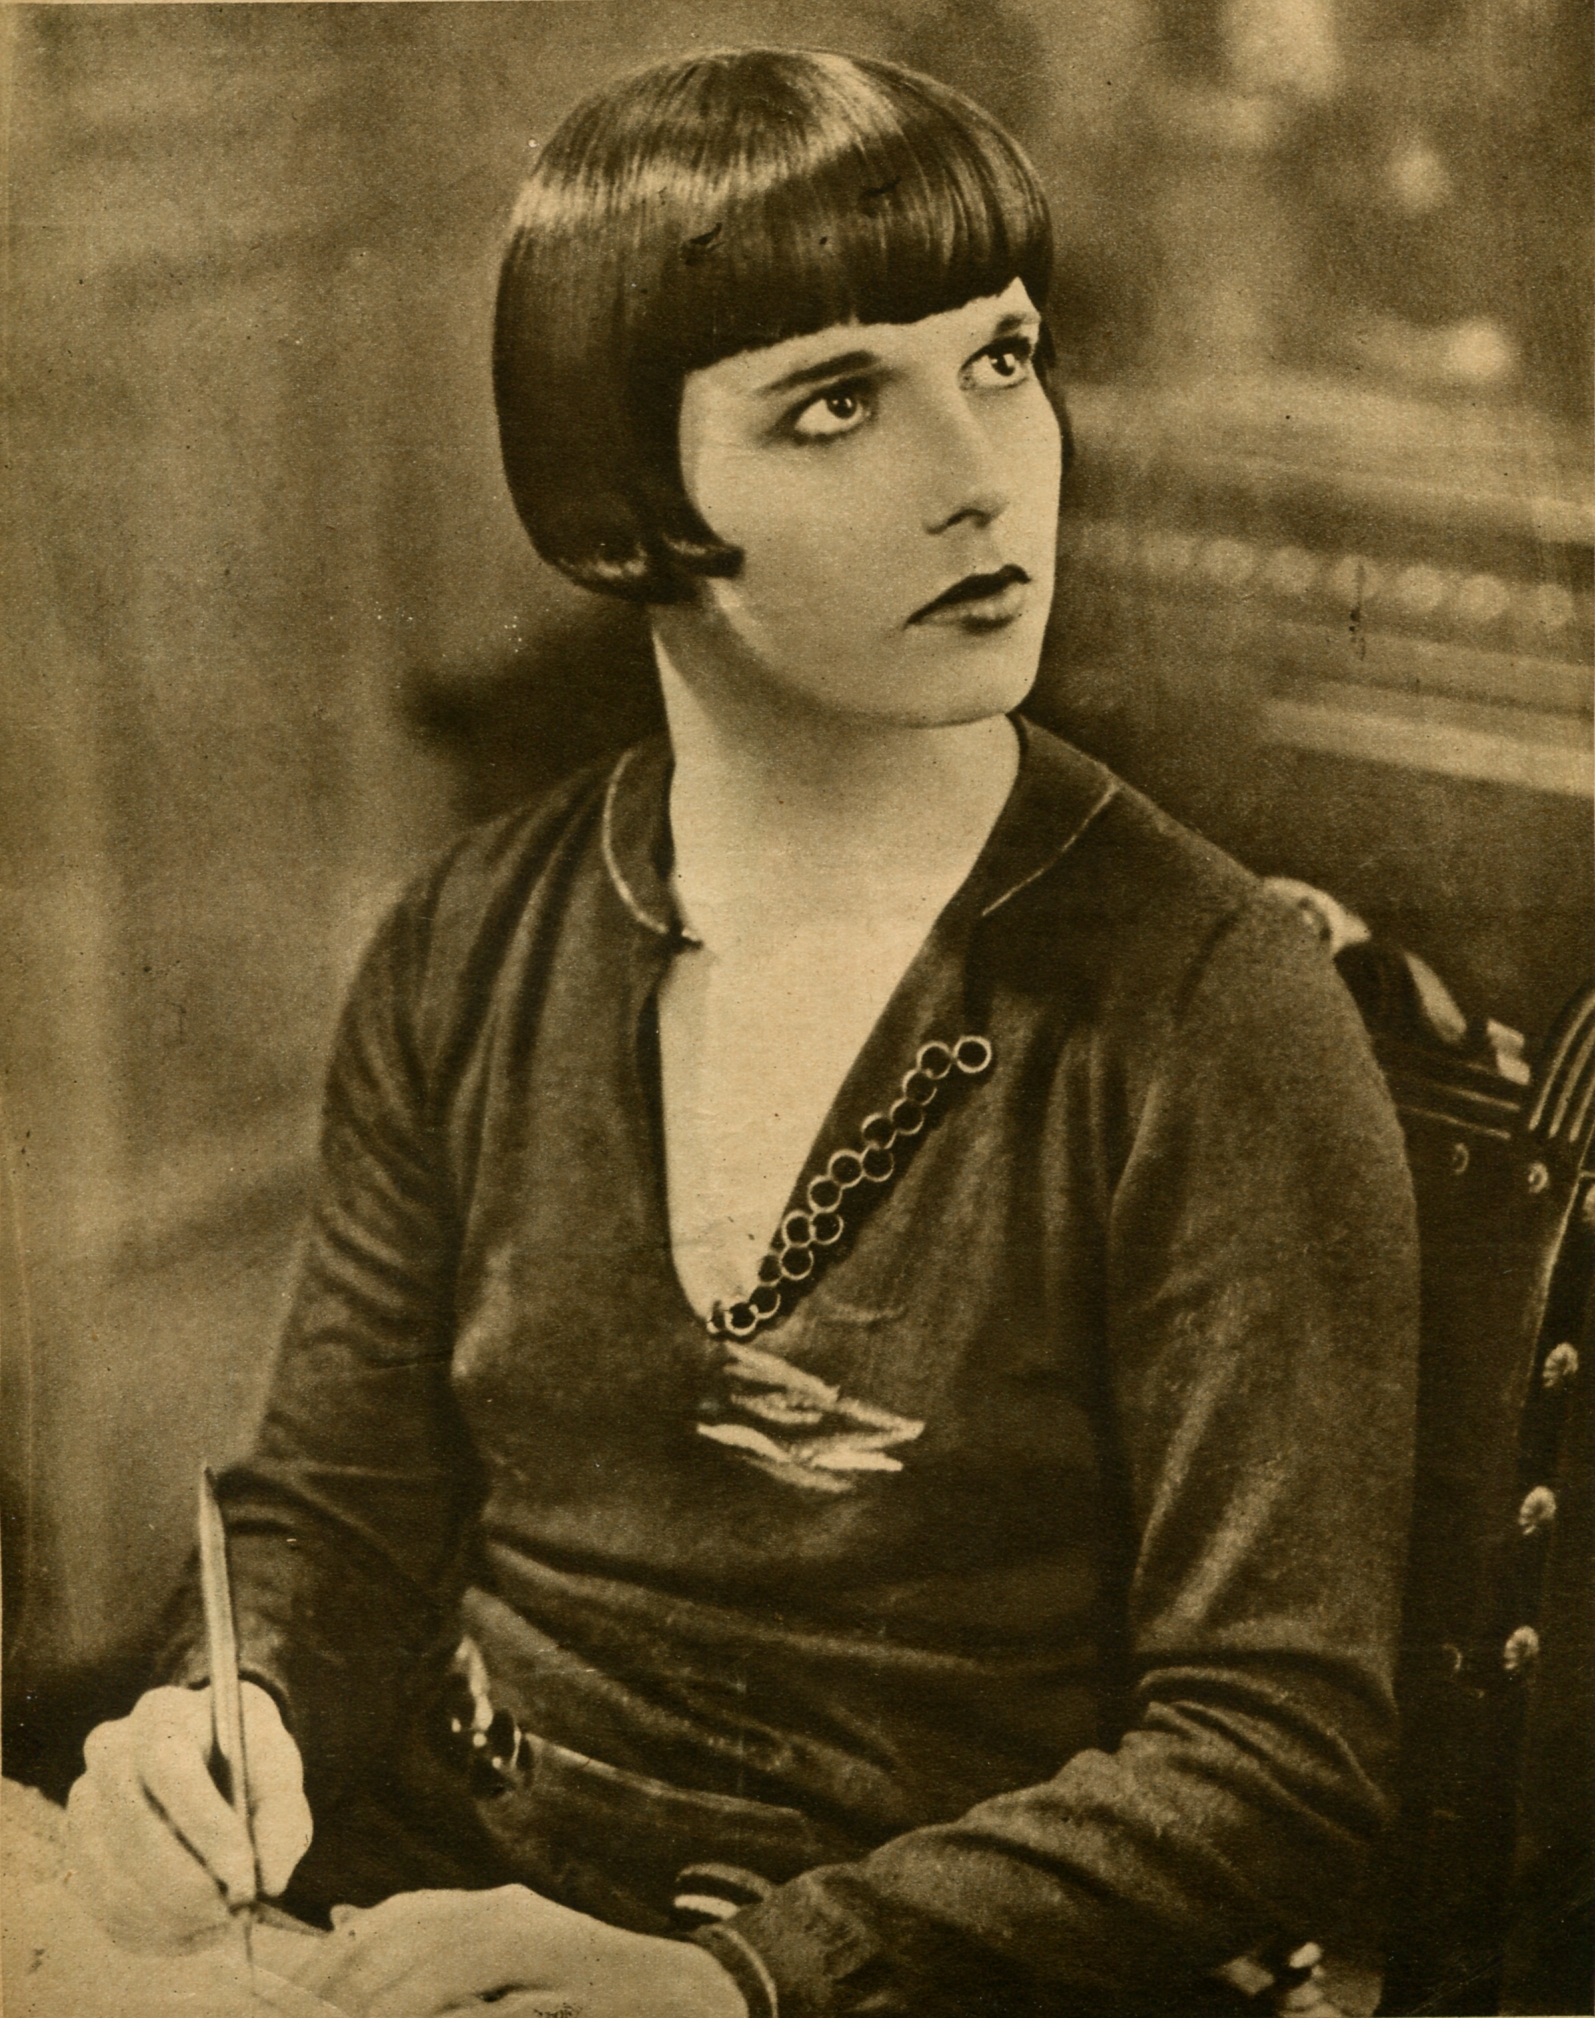 Prix de beauté (Miss Europe) (1930) Screenshot 4